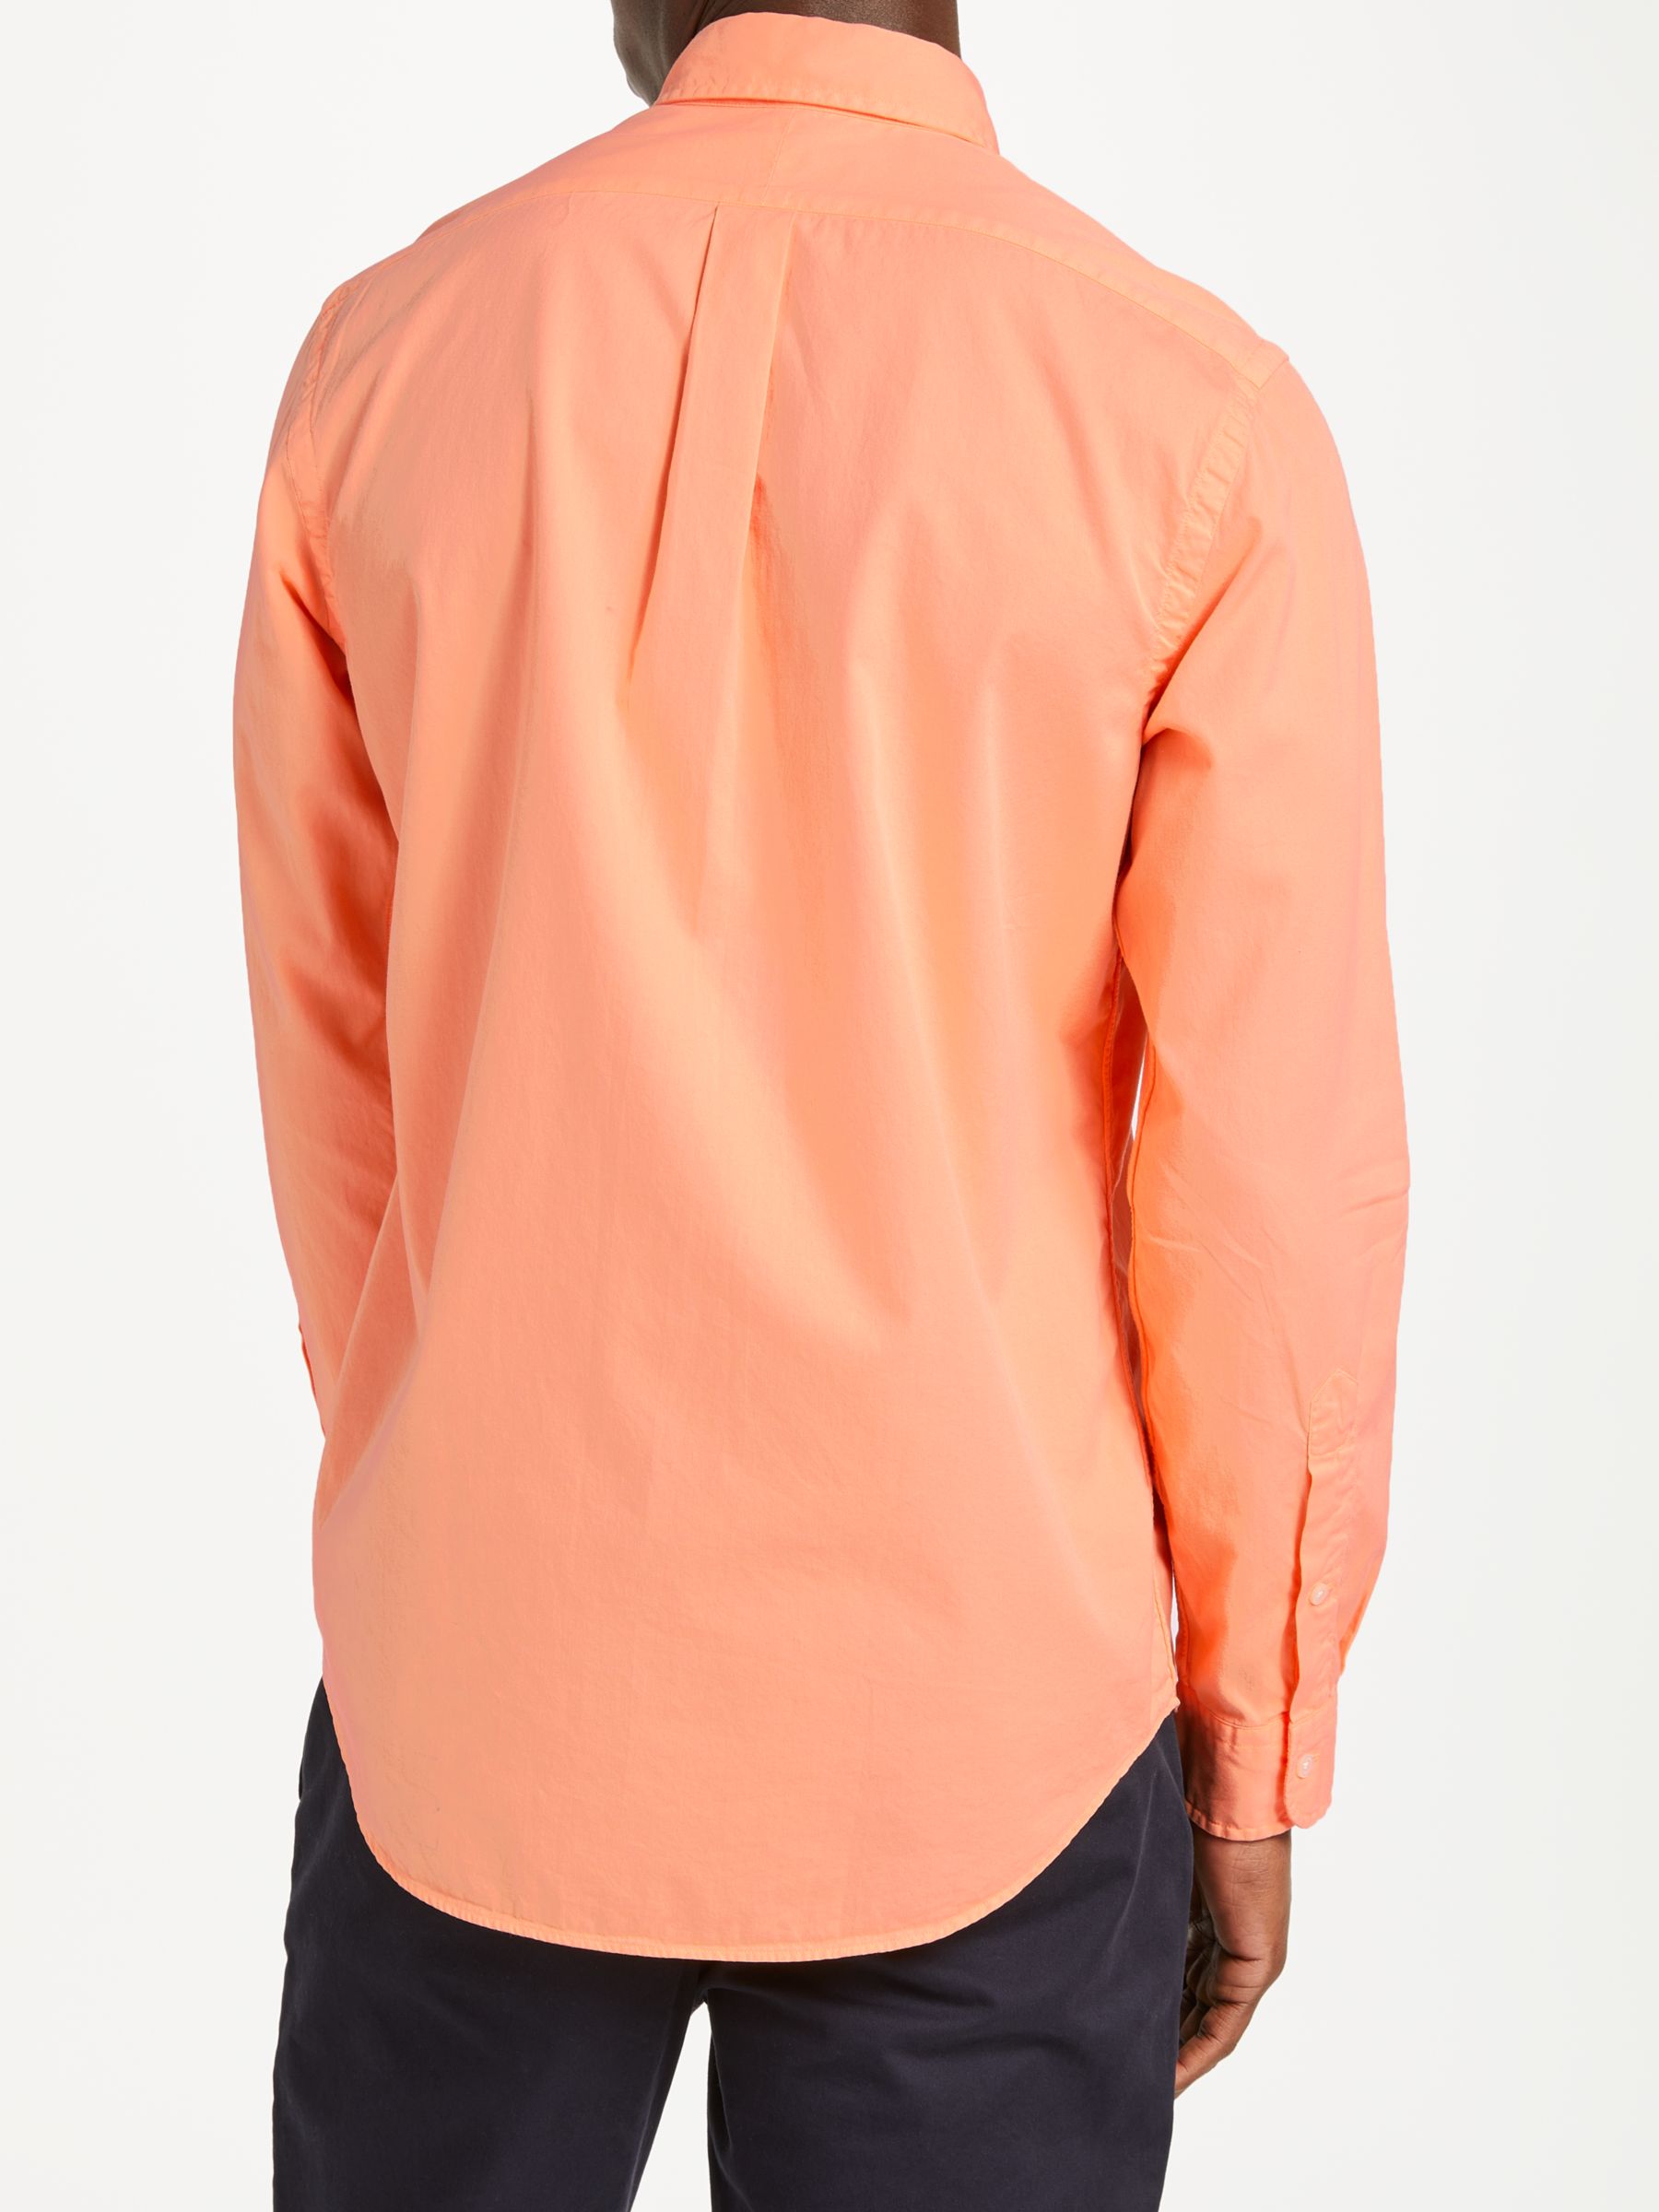 peach ralph lauren shirt